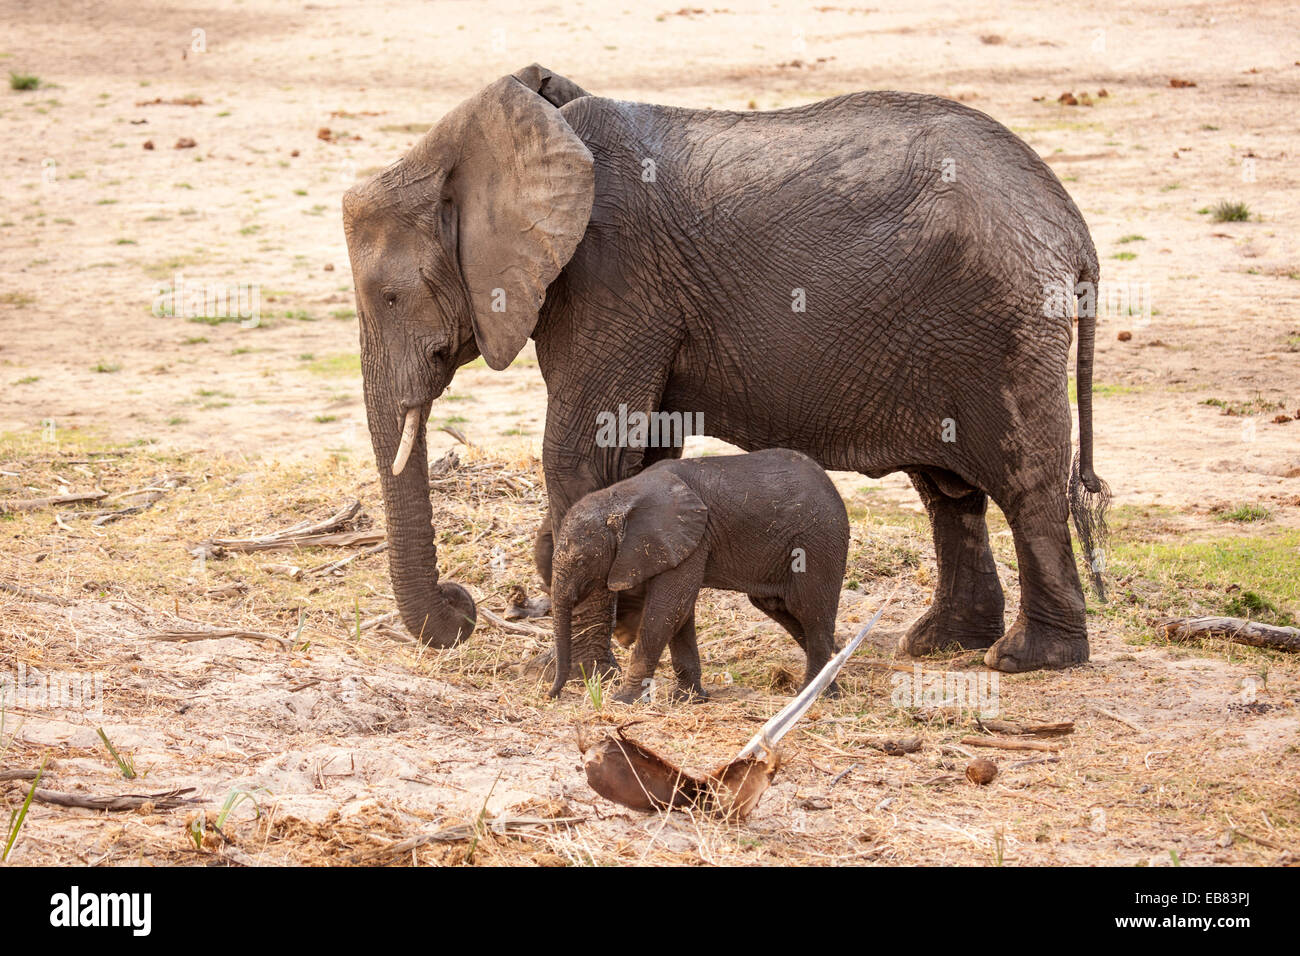 Elefante africano, la madre y el ternero en el lecho seco de un río en el Parque nacional Ruaha Tanzania Foto de stock